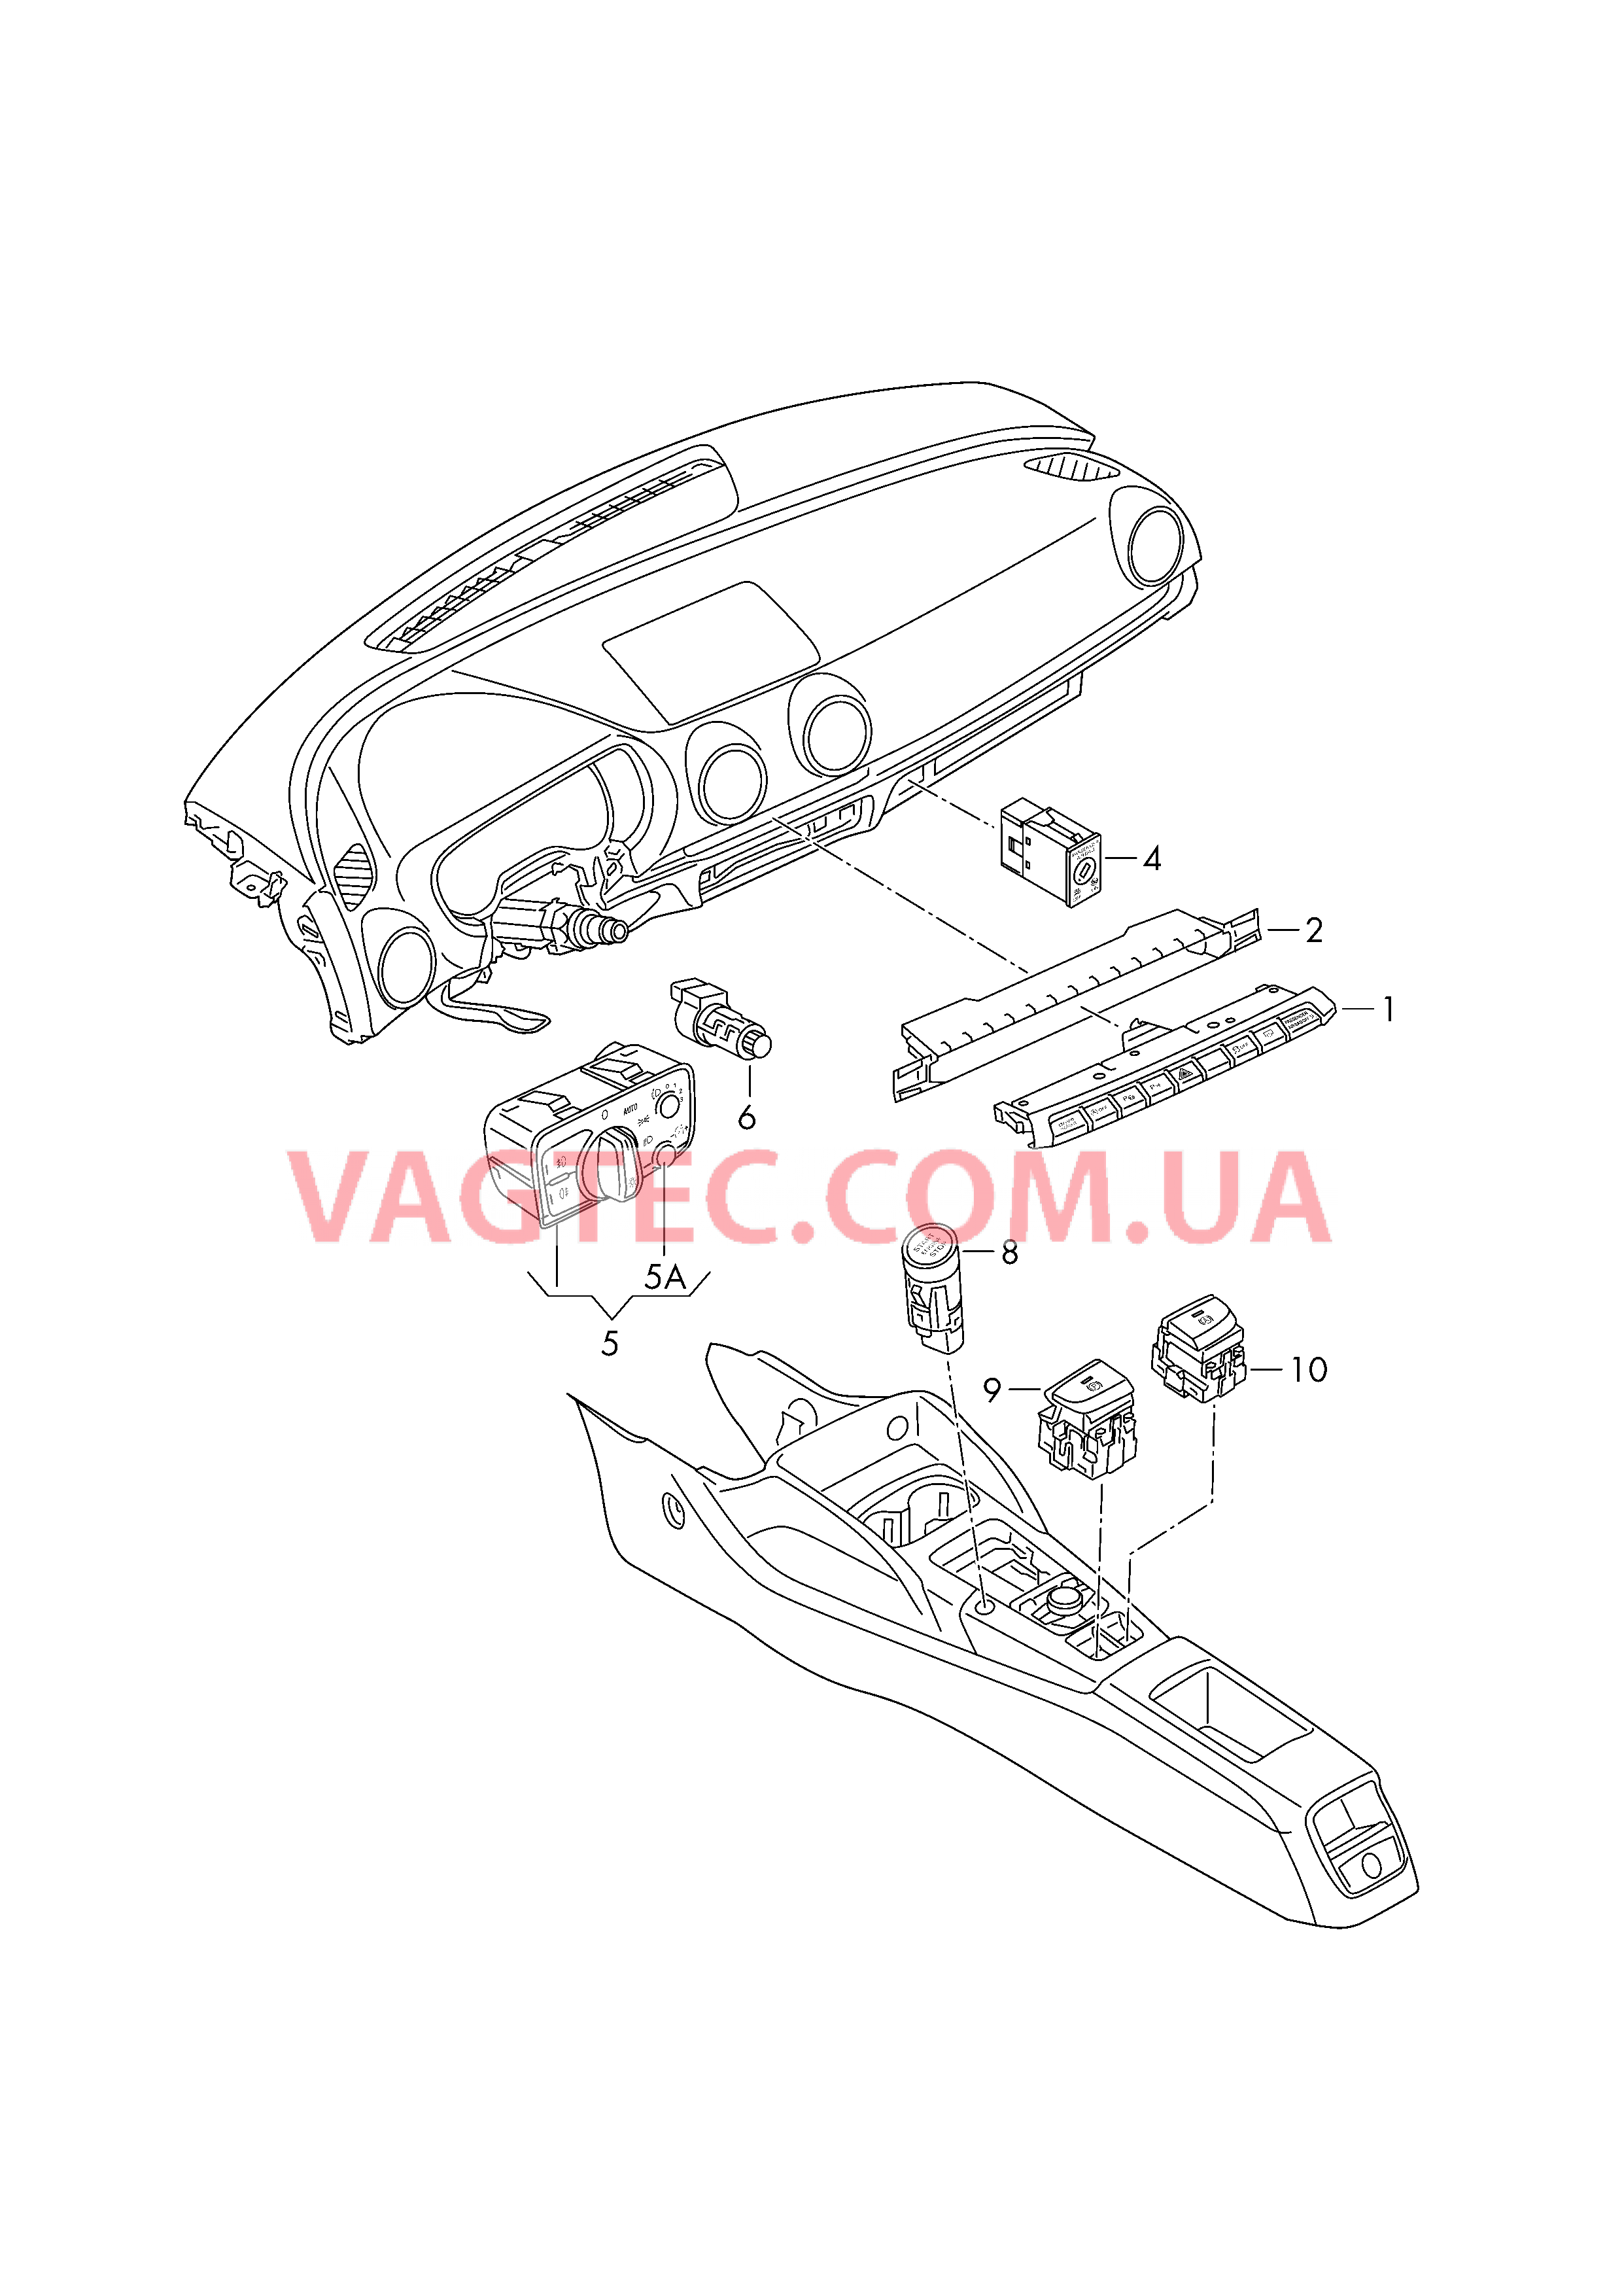 Выключатель в панели приборов Выключатель фар Выключатель в централ. консоли D             >> - 26.05.2014 для AUDI A3 2016